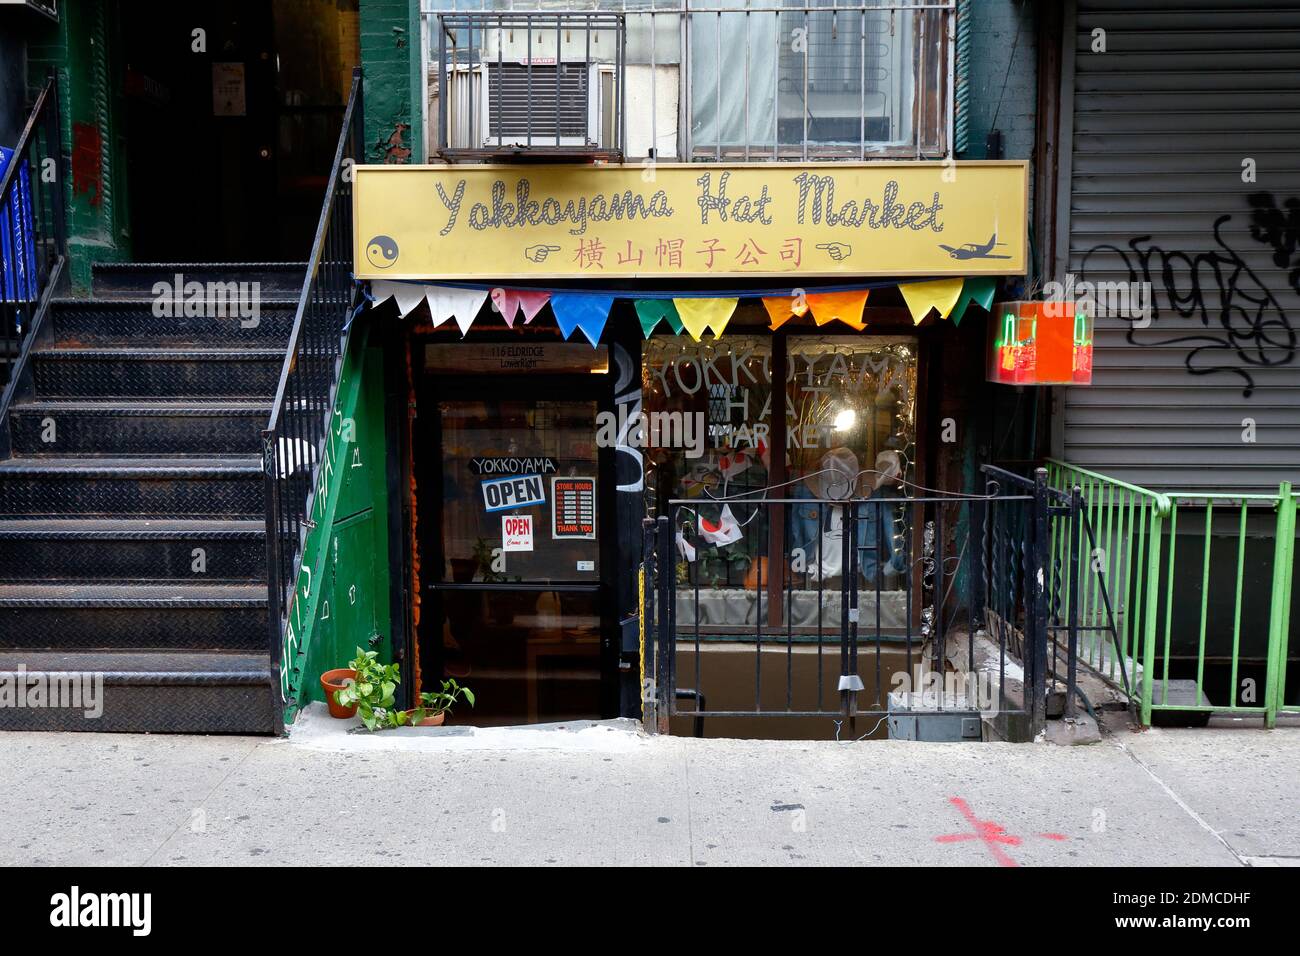 Yokkoyama hat Market, 116 Eldridge Street, New York, NY. Außenfassade eines Designer-Hutladens in der Lower East Side von Manhattan. Stockfoto